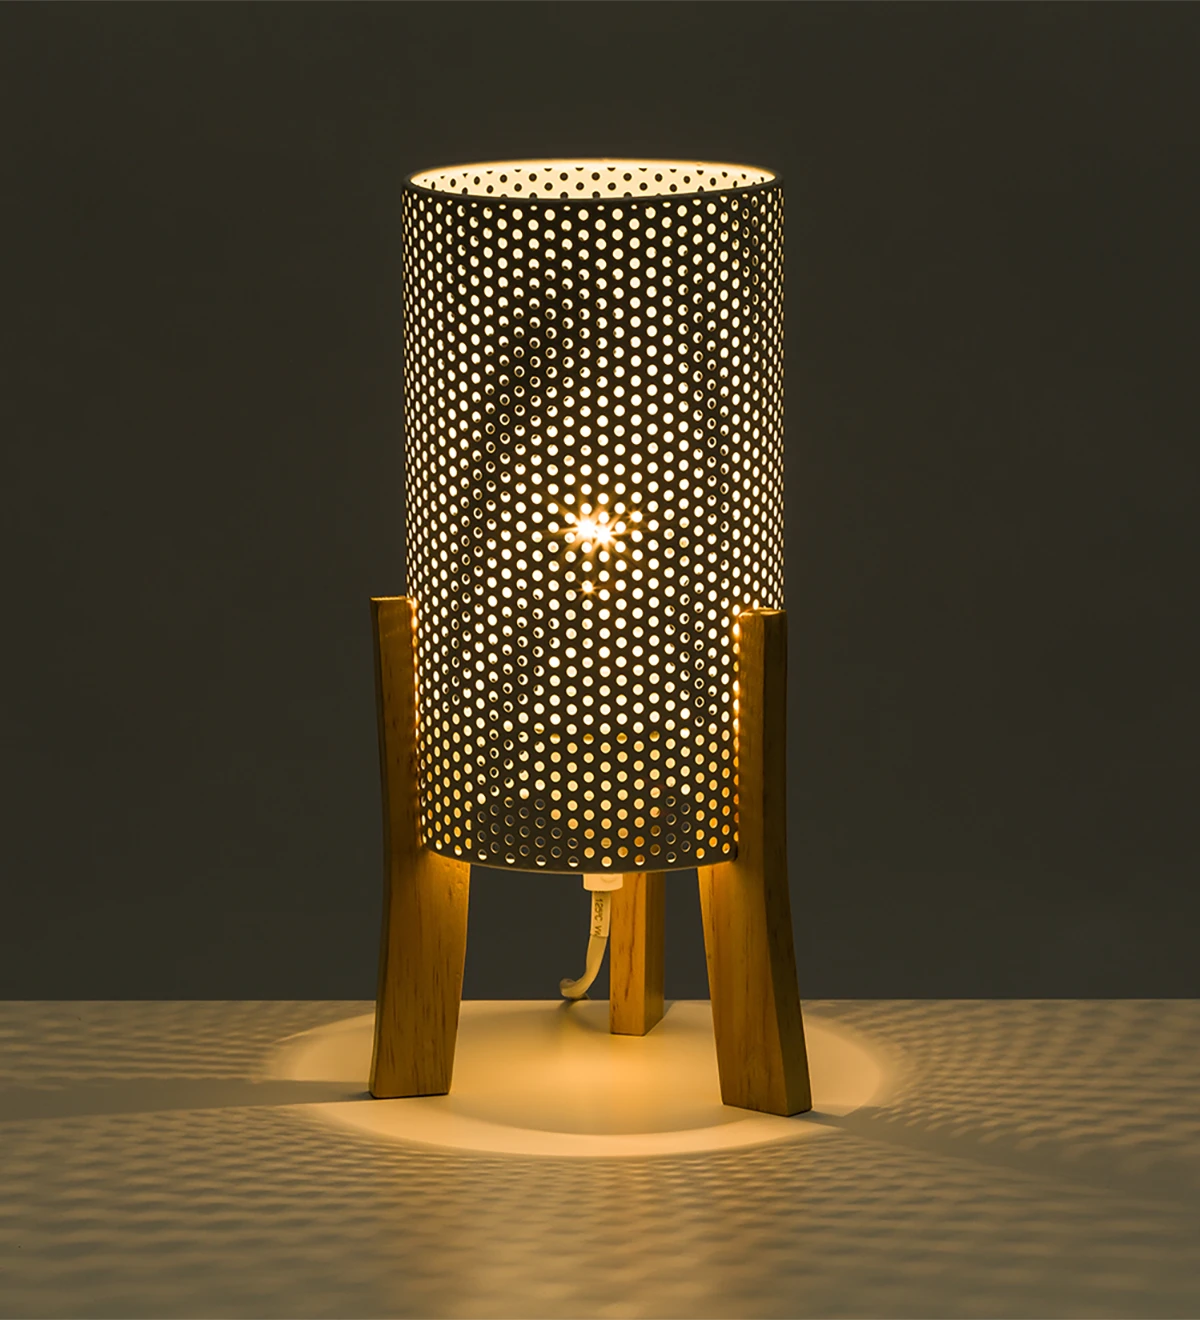  Lampe de table en métal blanc et support en bois.